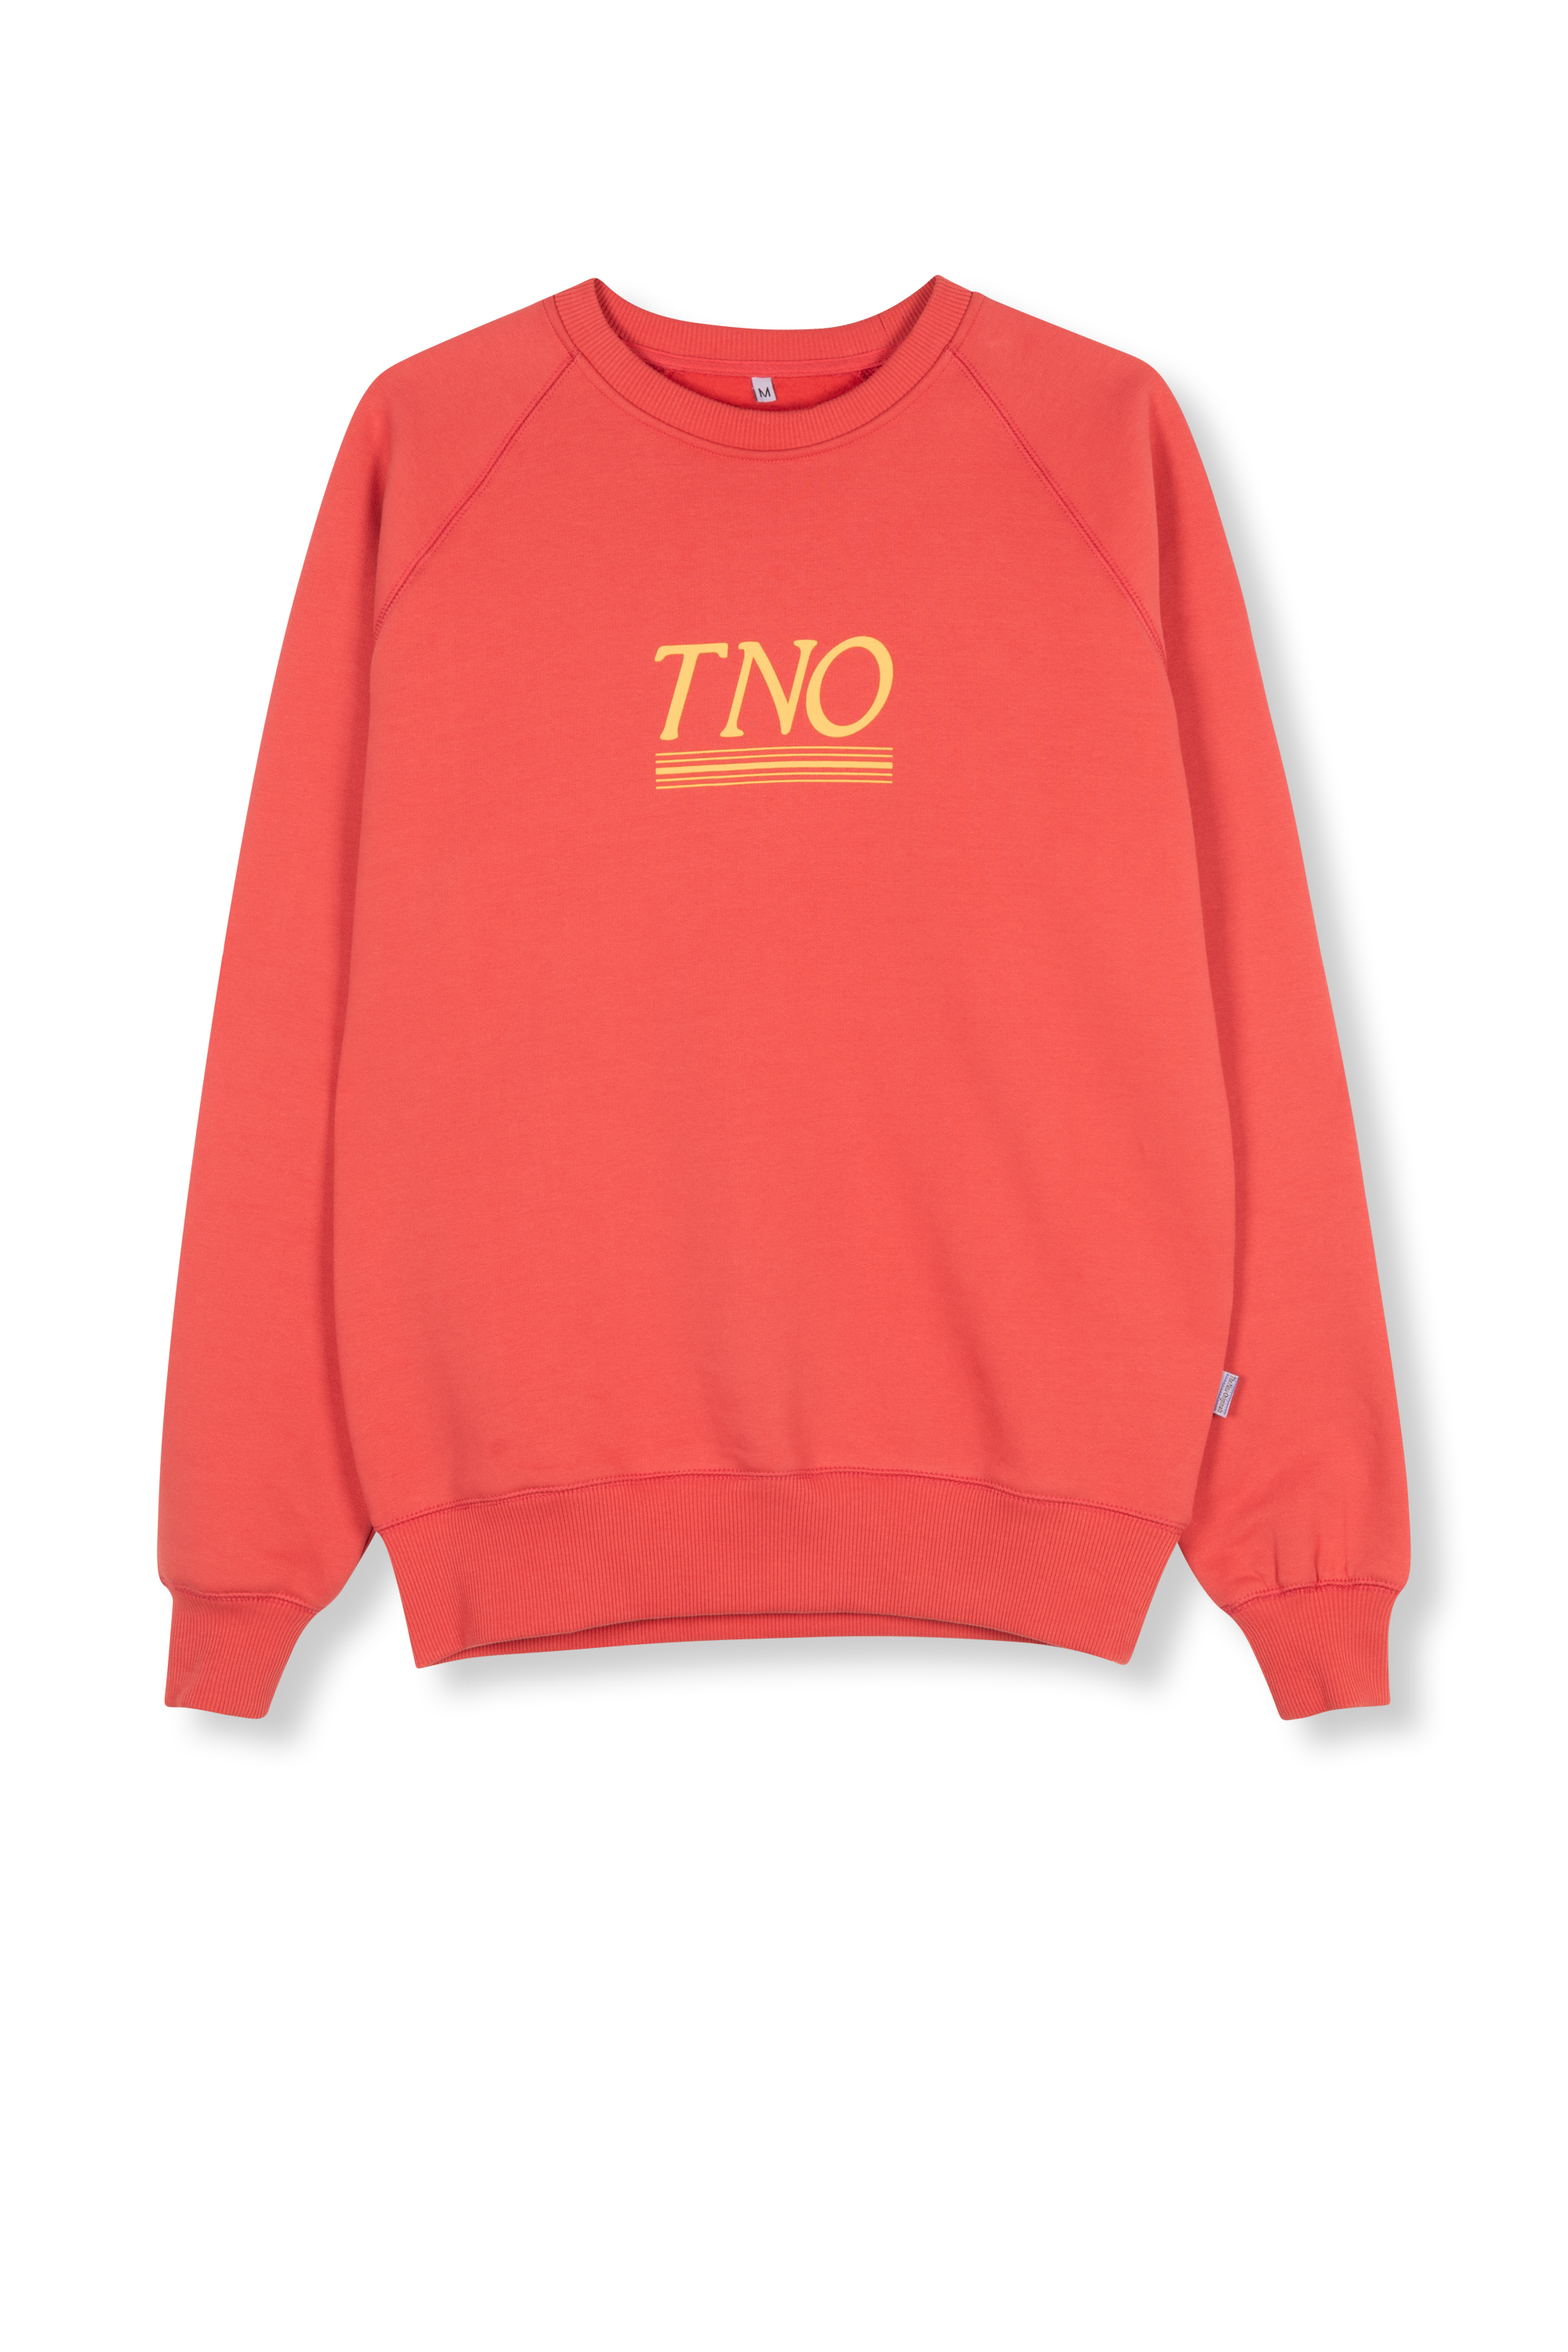 TNO Underline Sweater Coral